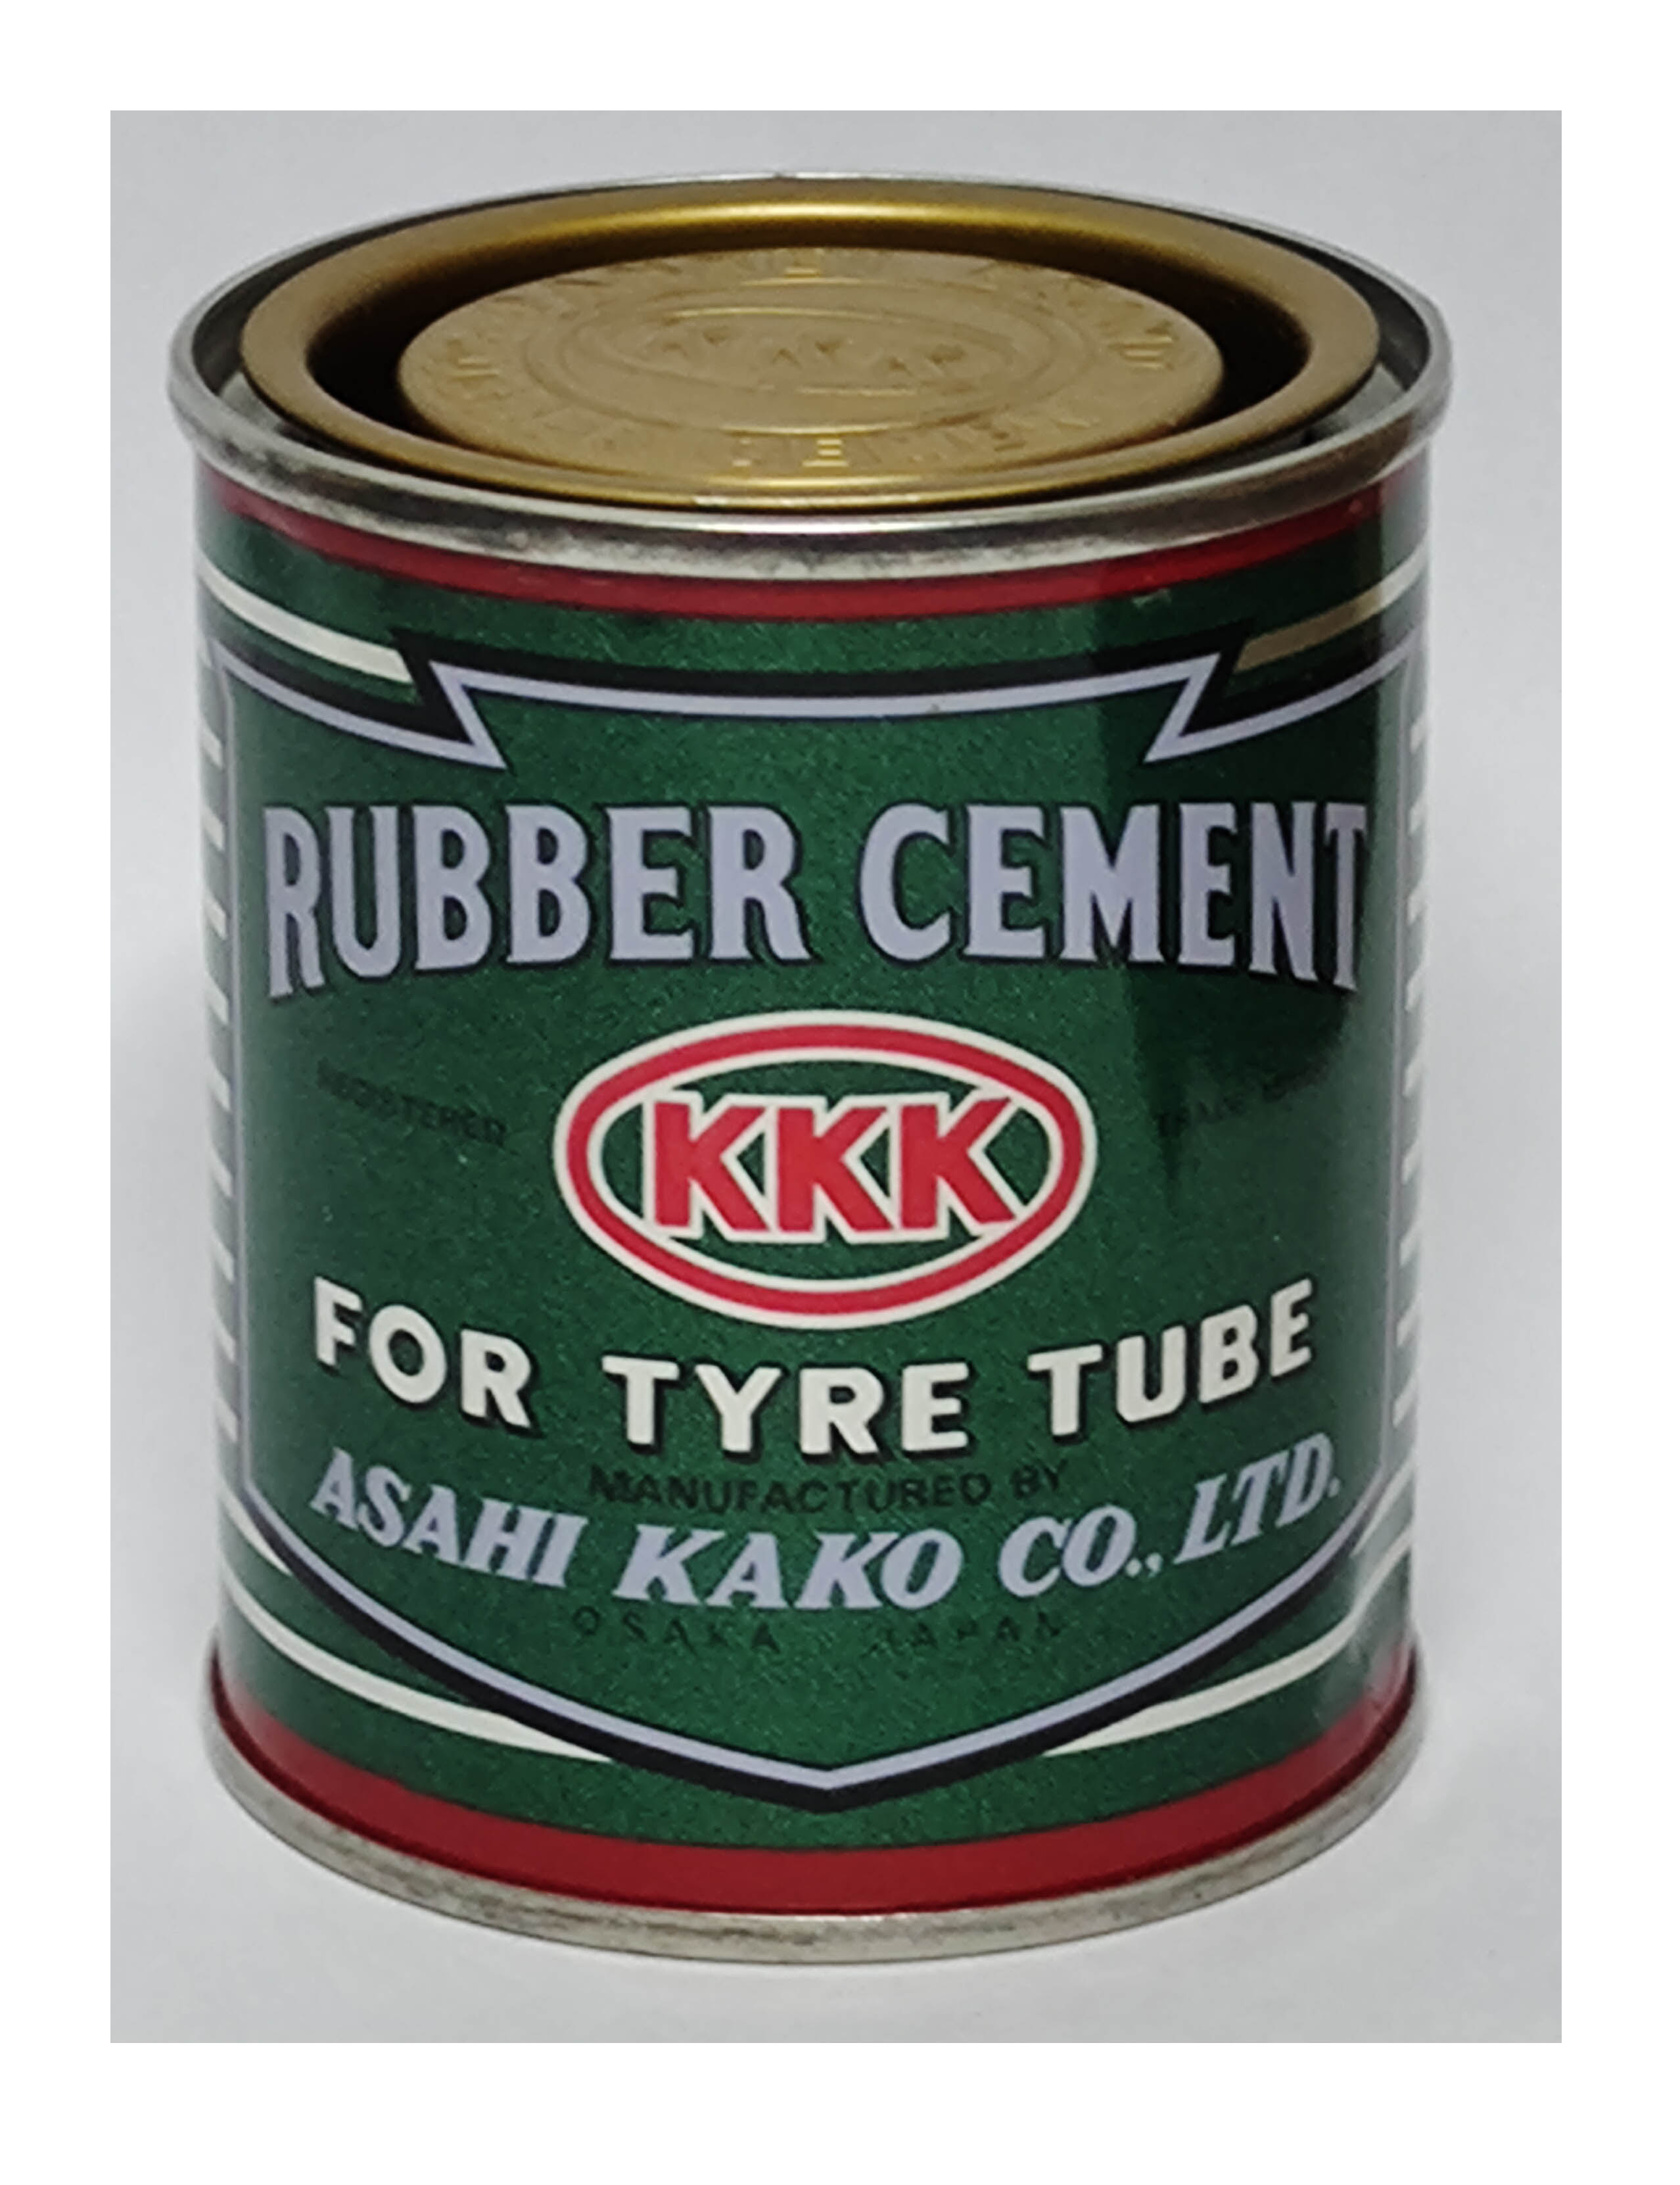 กาวปะยาง กาวยาง 3K กาว3เค KKK RUBBER CEMENT FOR TYRE TUBE size 80 g (1,3,6 กระป๋อง)